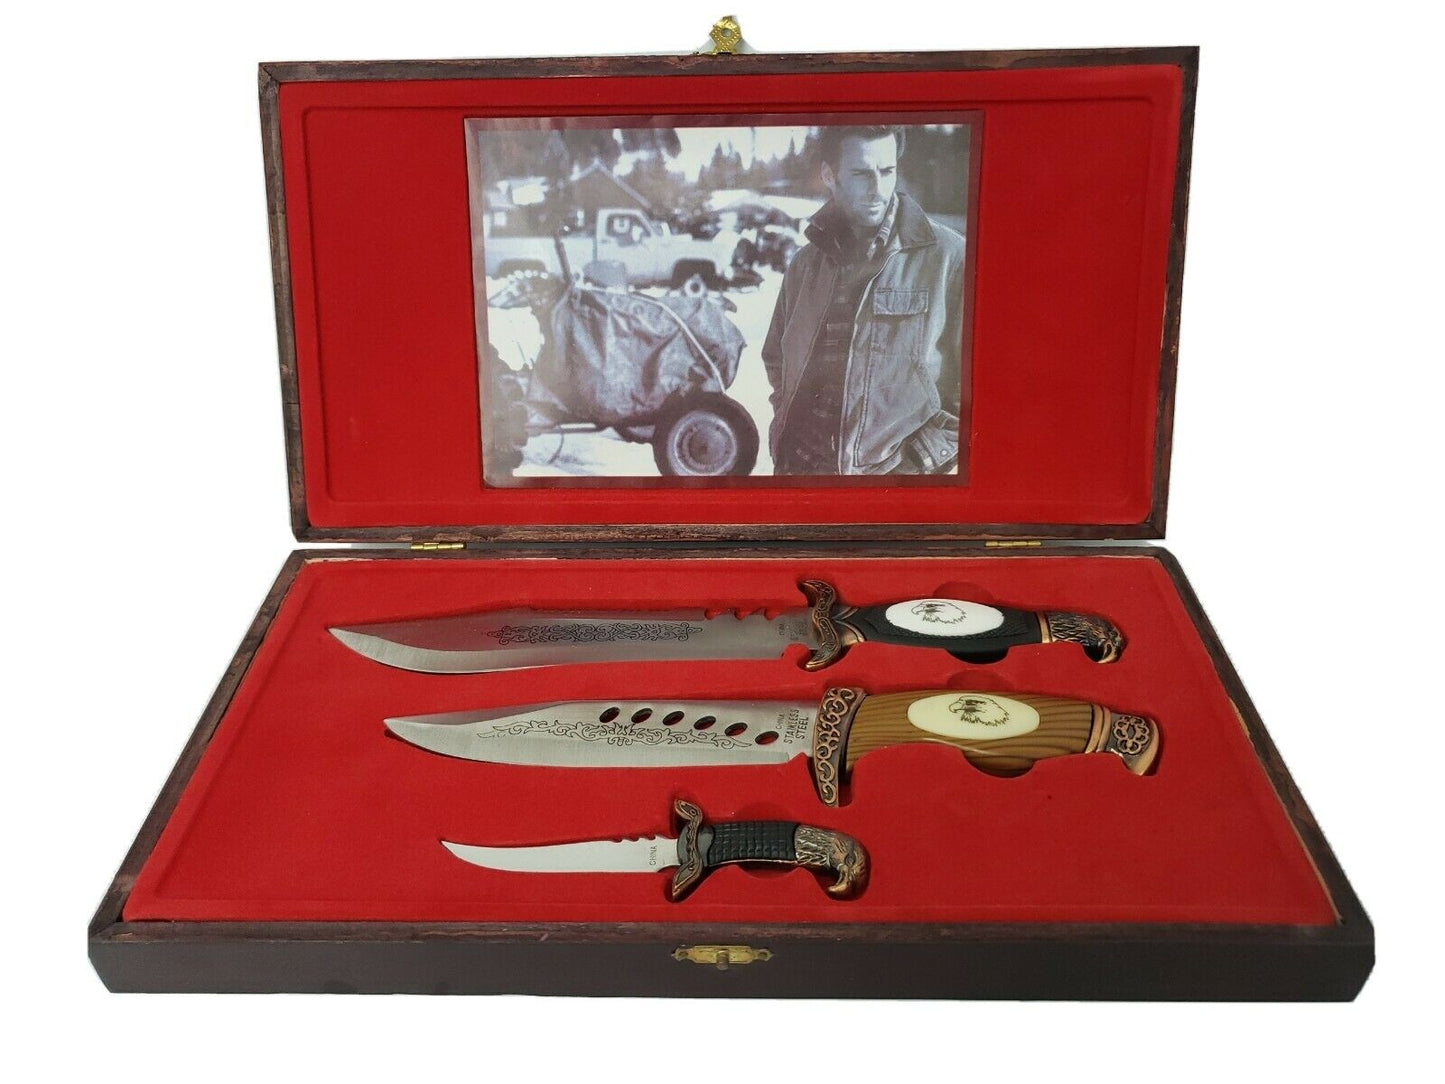 Coffret cadeau 3 couteaux en coffret bois lame fixe made in china